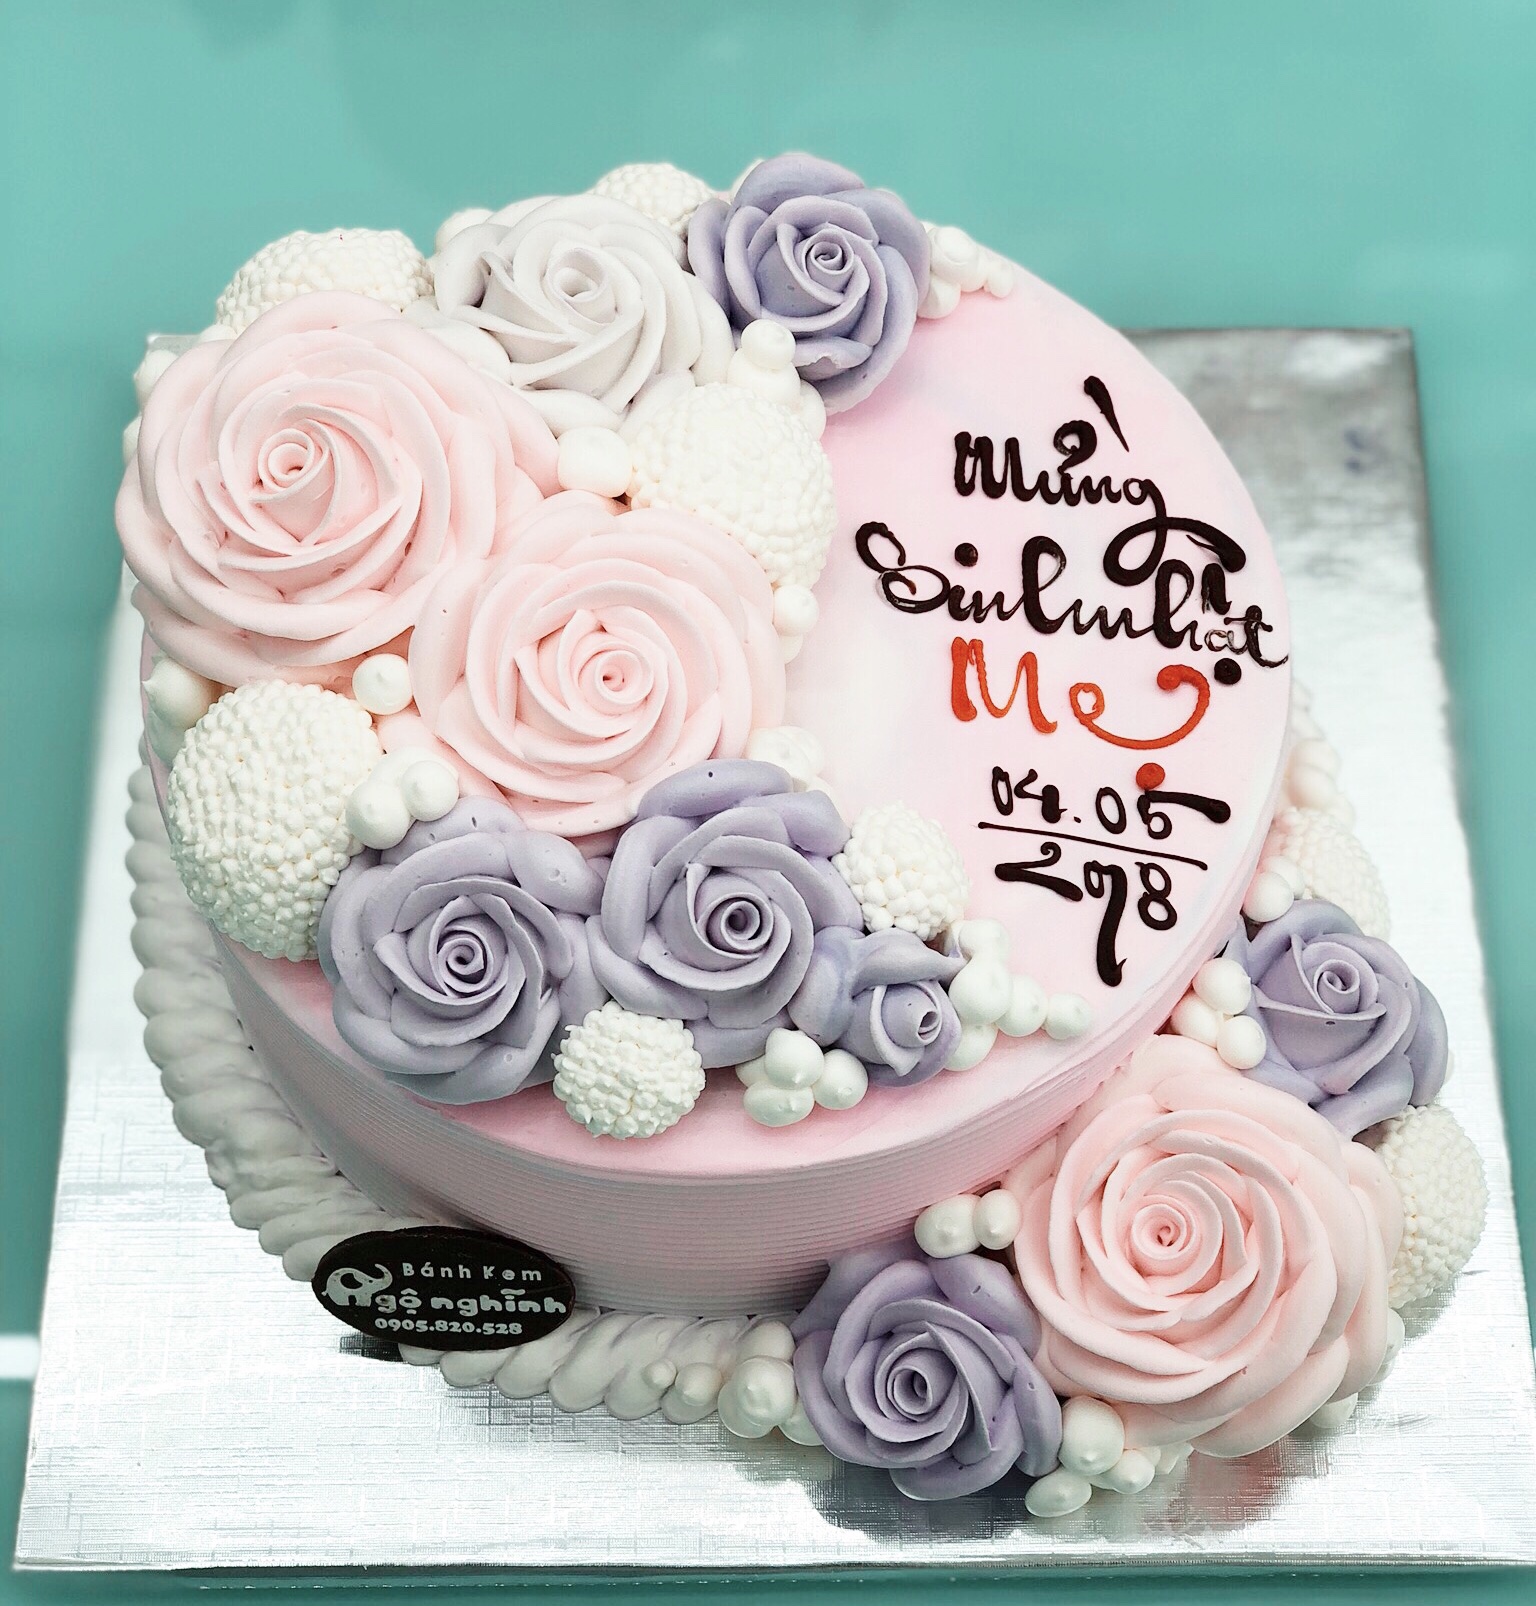 Bánh kem sinh nhật tặng mẹ 2021  Alo Flowers